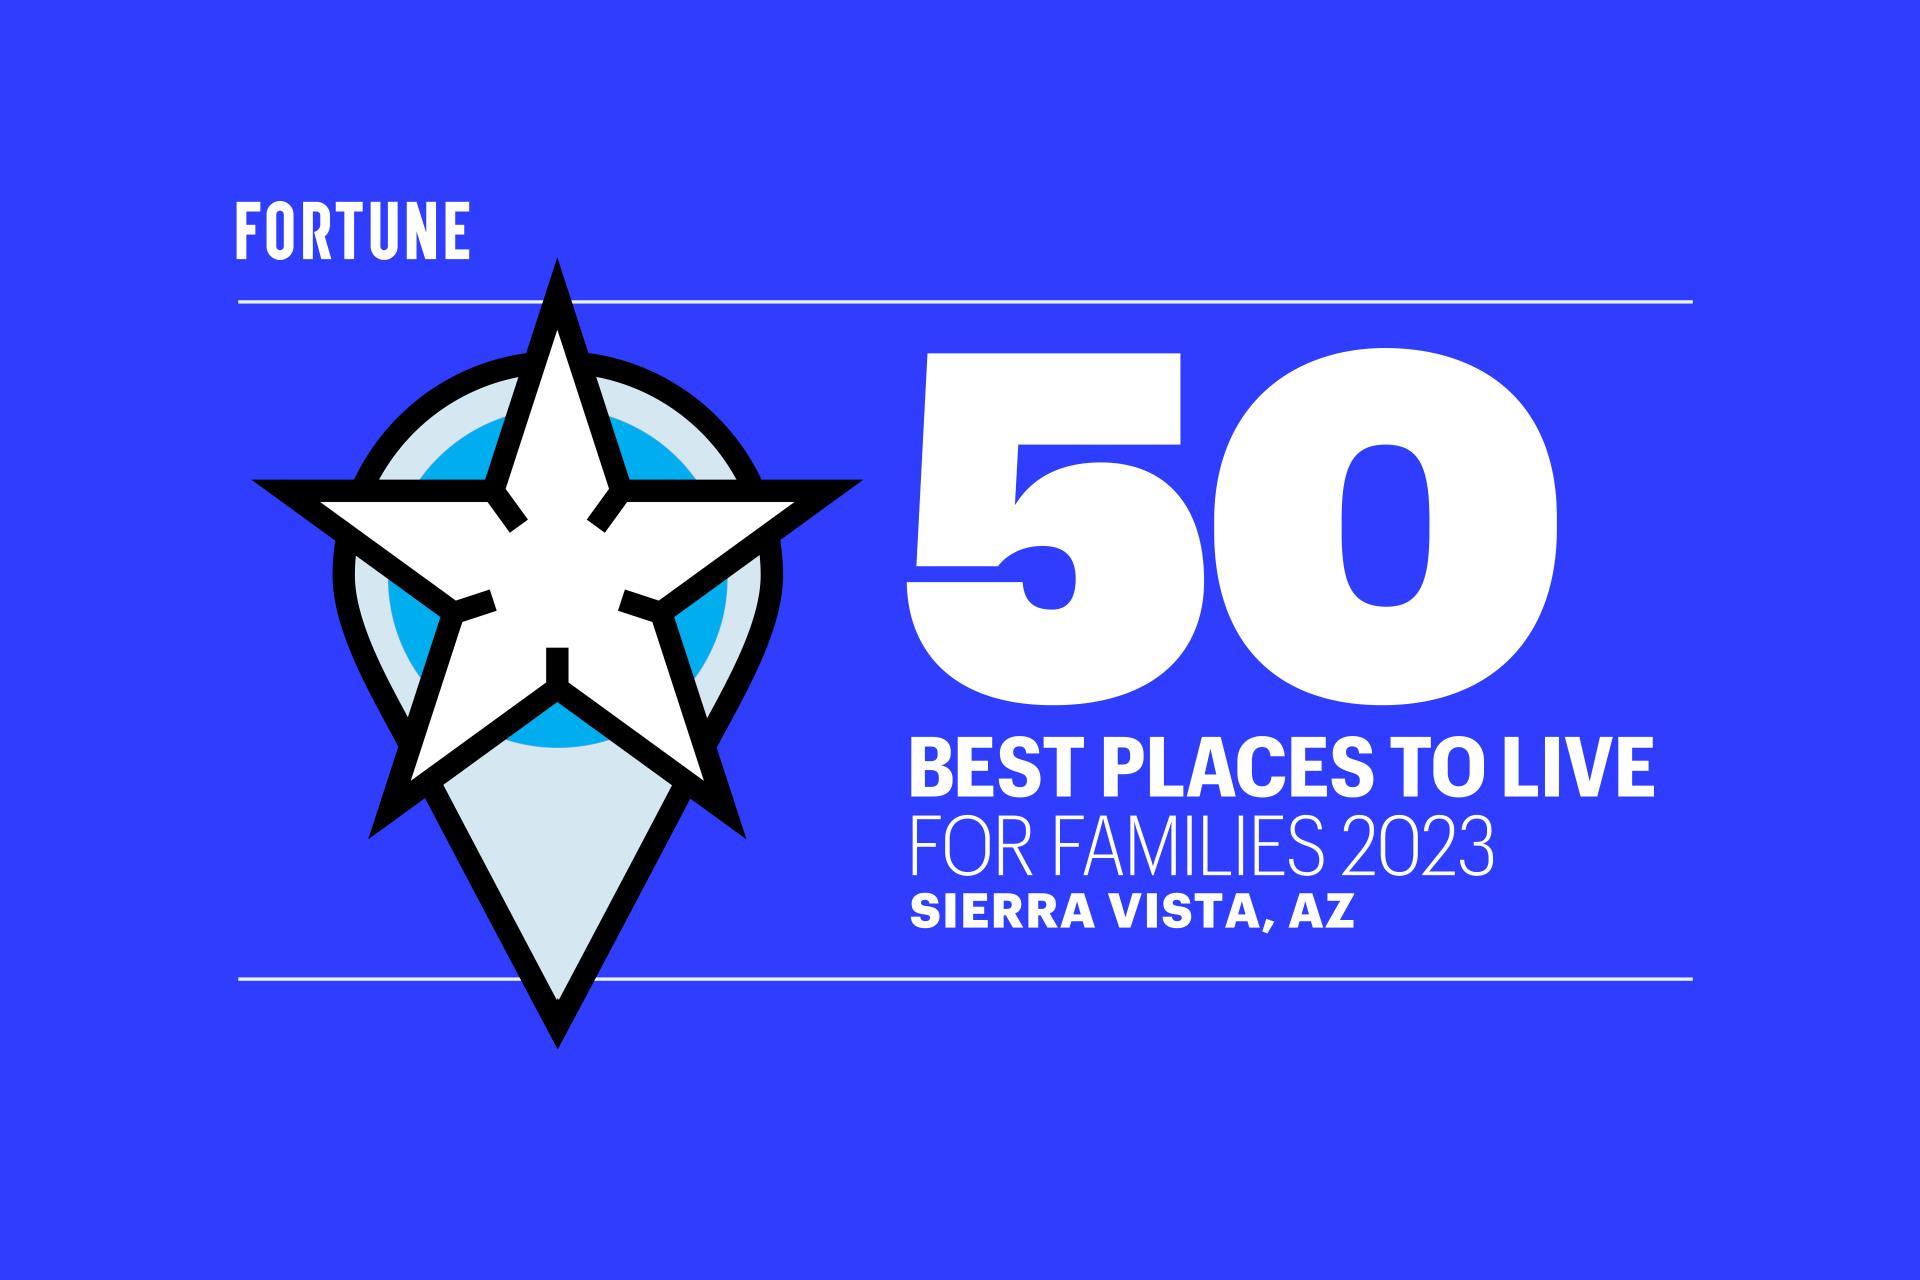 horizfinal_50 Best Places_SierraVista